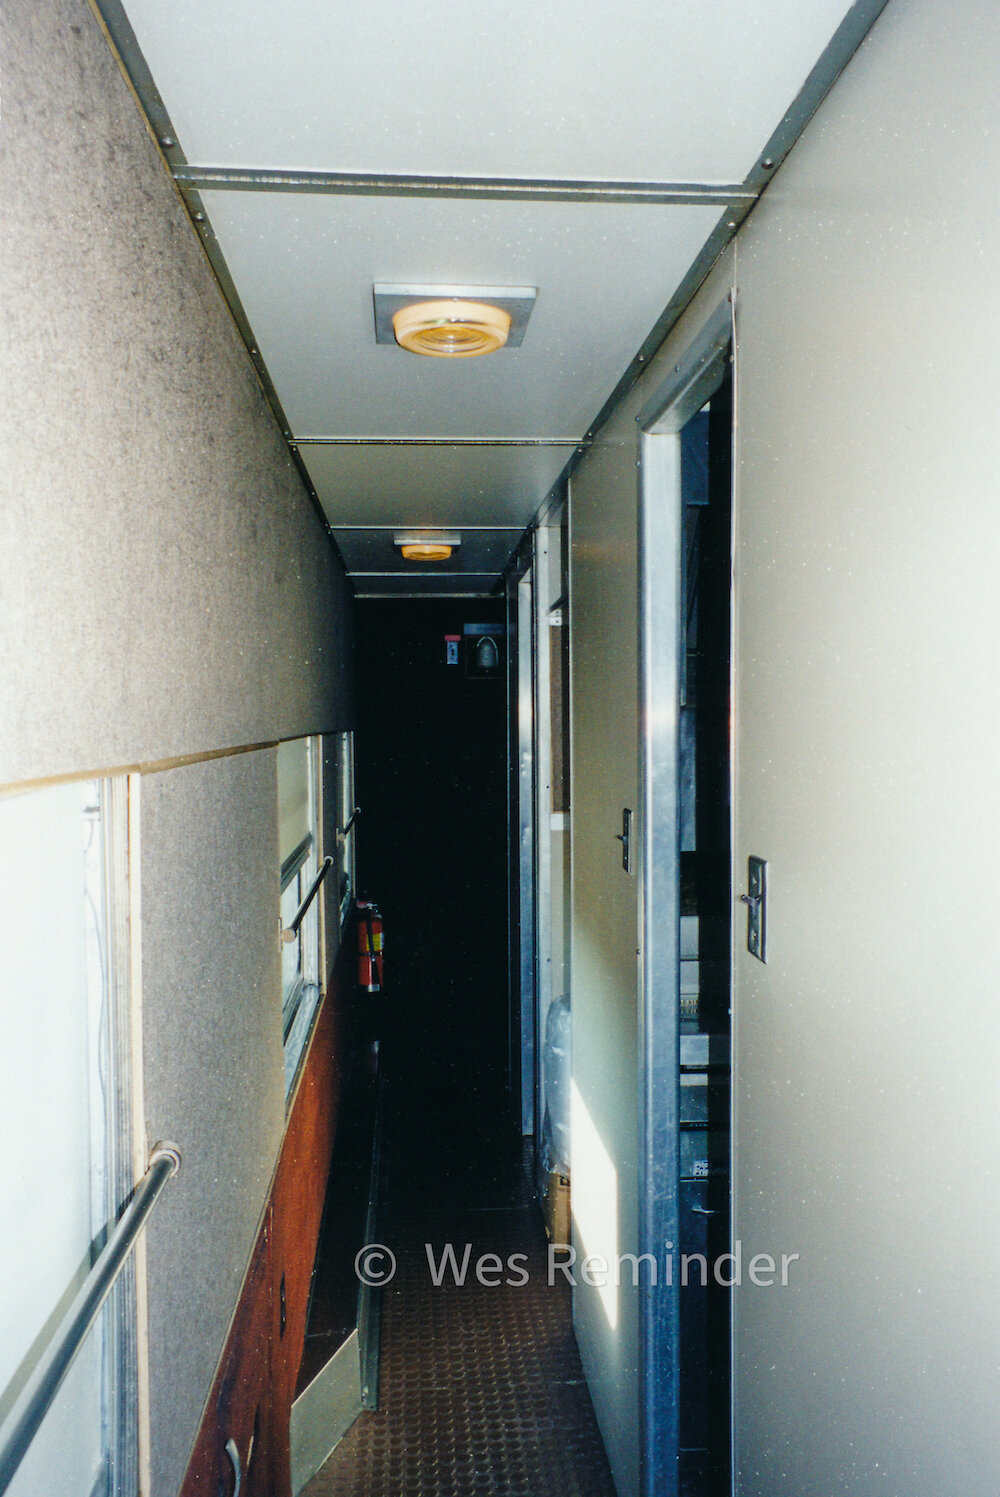 Conrail 9 Hallway Toward Vestibule